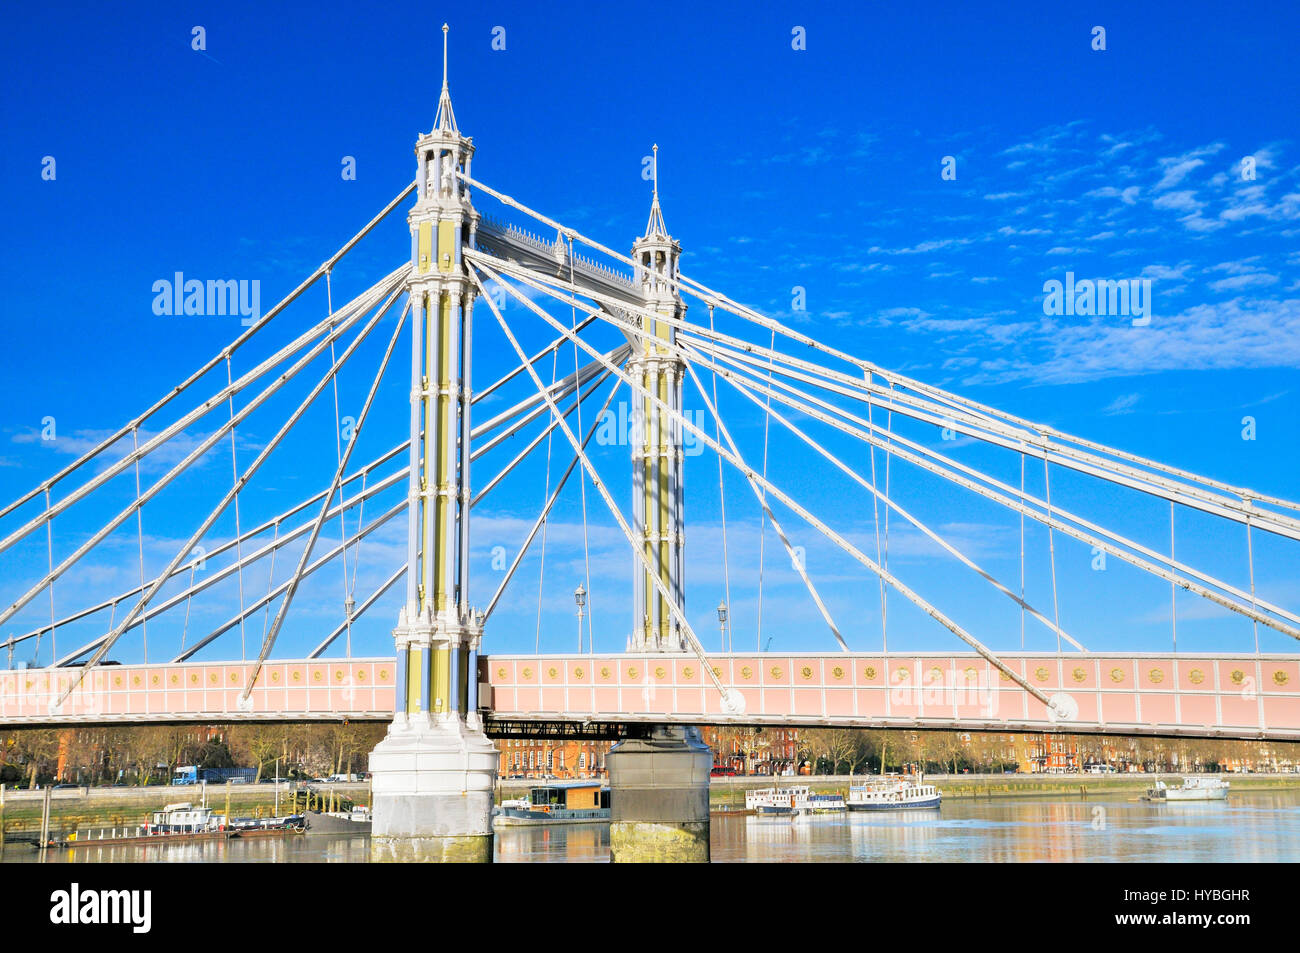 Albert ponte sul fiume Thames, London, England, Regno Unito Foto Stock